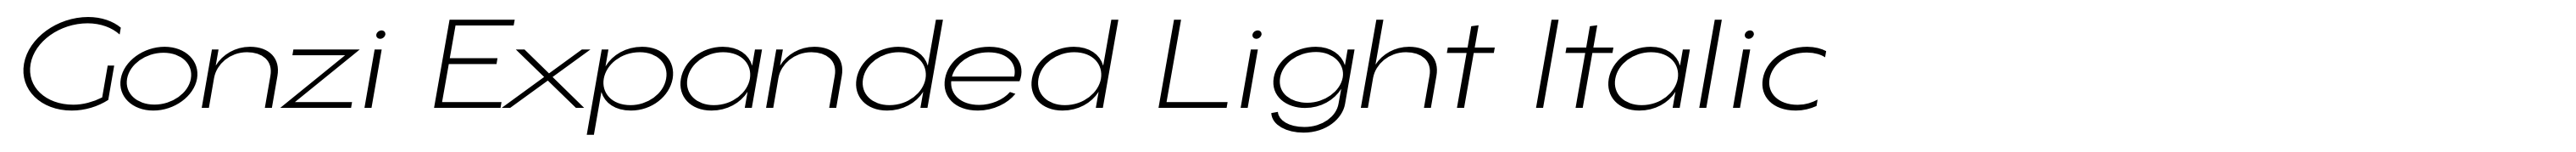 Gonzi Expanded Light Italic